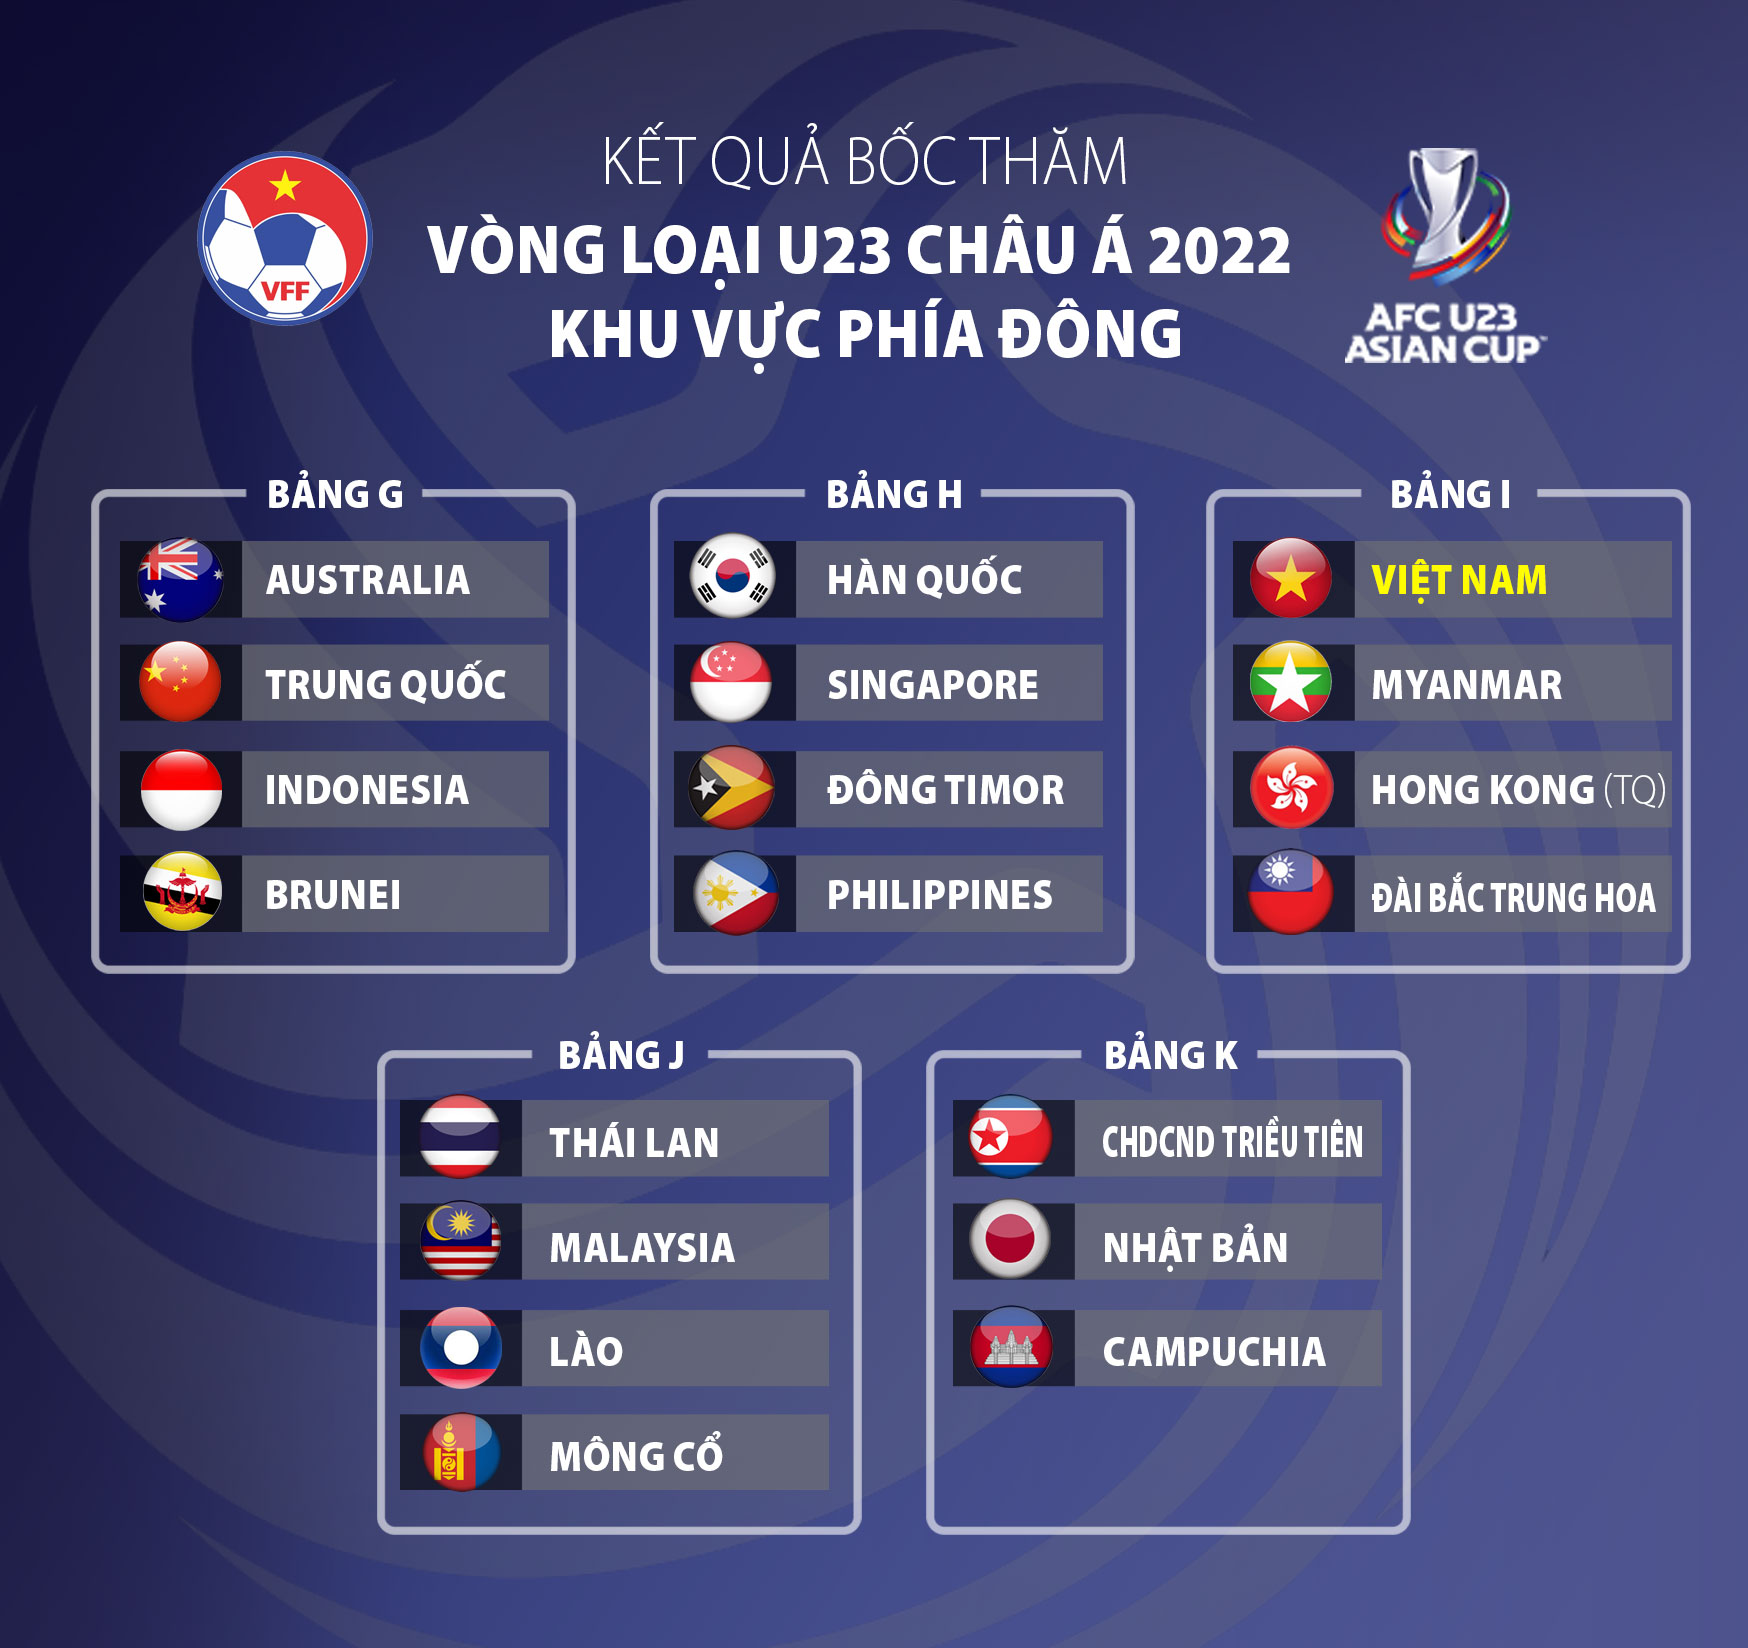 VFF Vòng loại U23 châu Á 2022 Việt Nam cùng bảng với Myanmar, Hồng